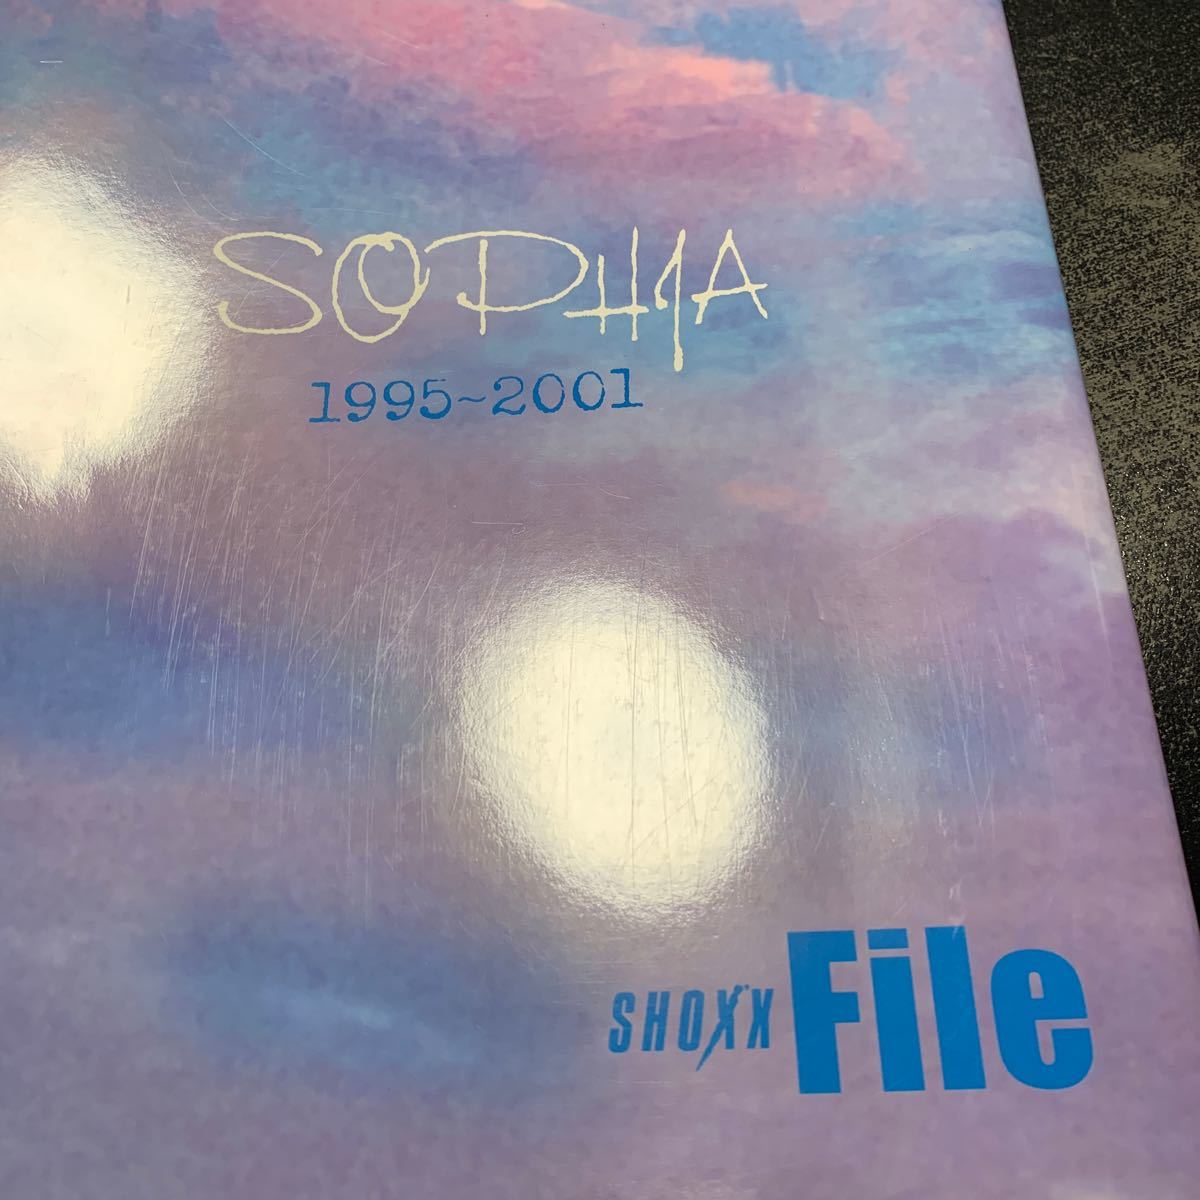 SHOXX File SOPHIA 1995-2001 sophia сосна холм . Toyota мир . чёрный . талант сырой красный сосна .. столица . один 